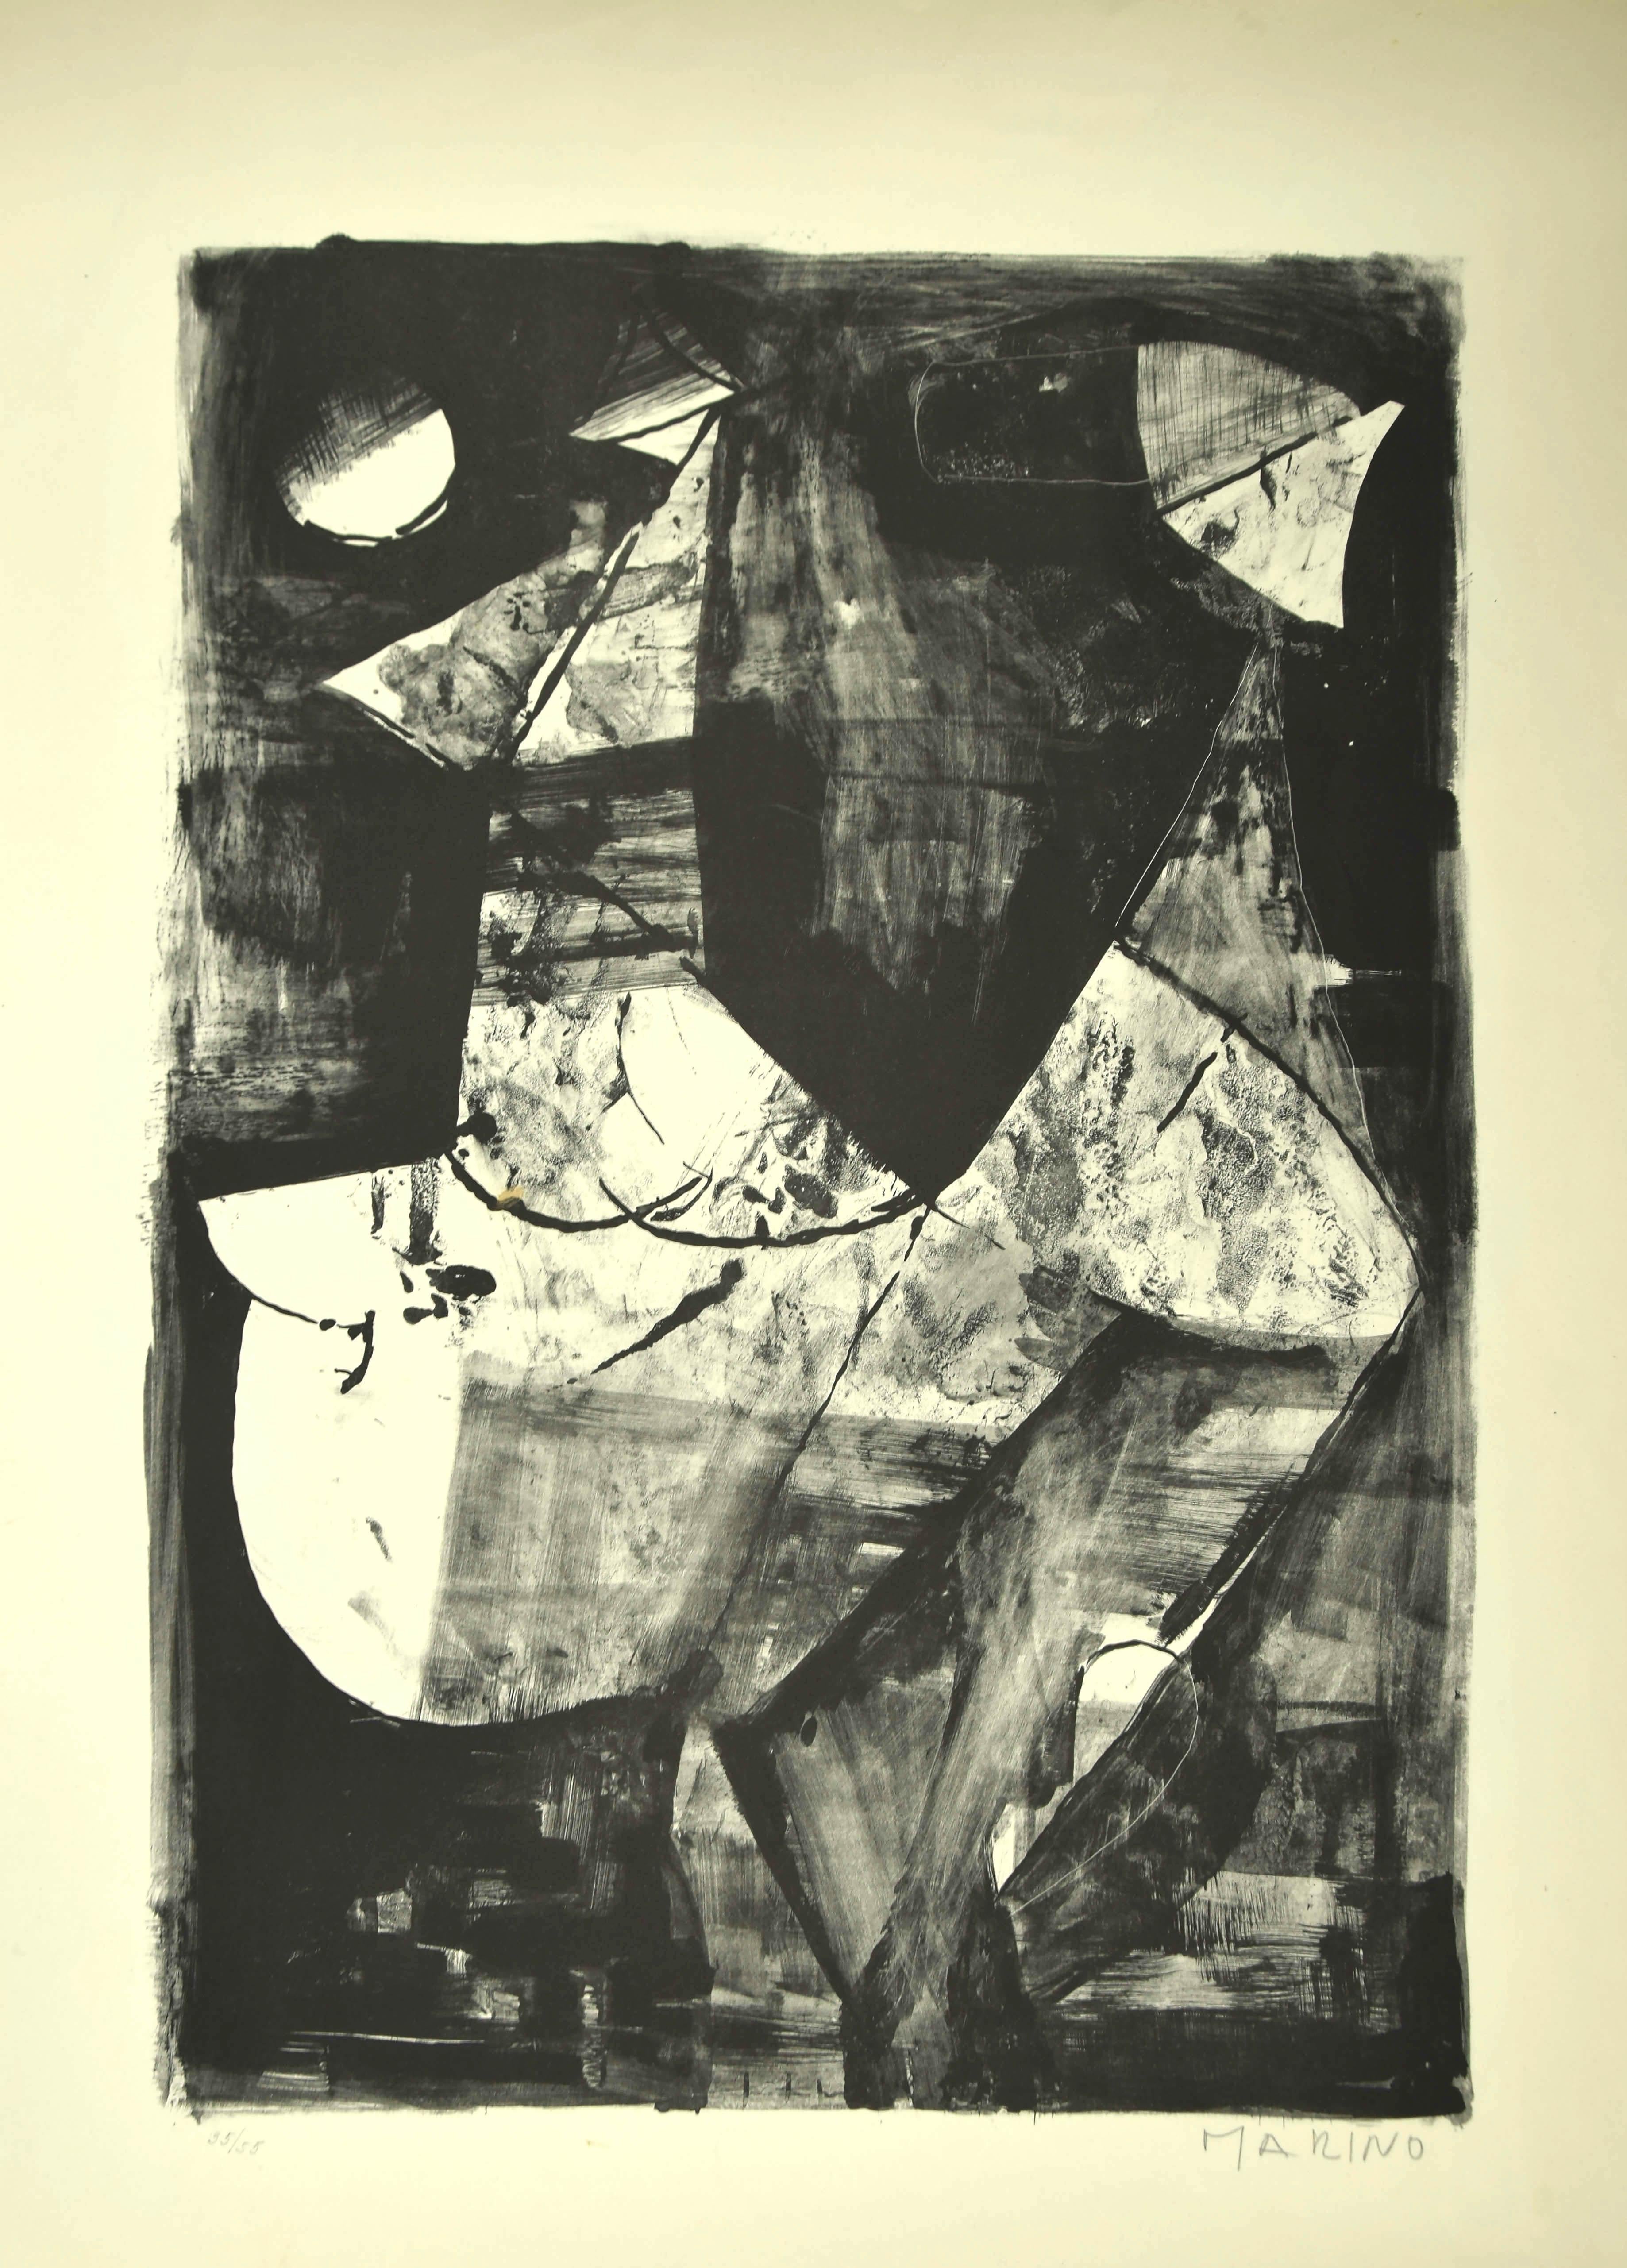 White Horse ist eine Original-Lithographie von Marino Marini aus dem Jahr 1966. Handsigniert mit Bleistift am unteren rechten Rand. Auflage von 55 Drucken. Guter Zustand bis auf einige kleine Risse am linken Rand und ein leicht vergilbtes Blatt.